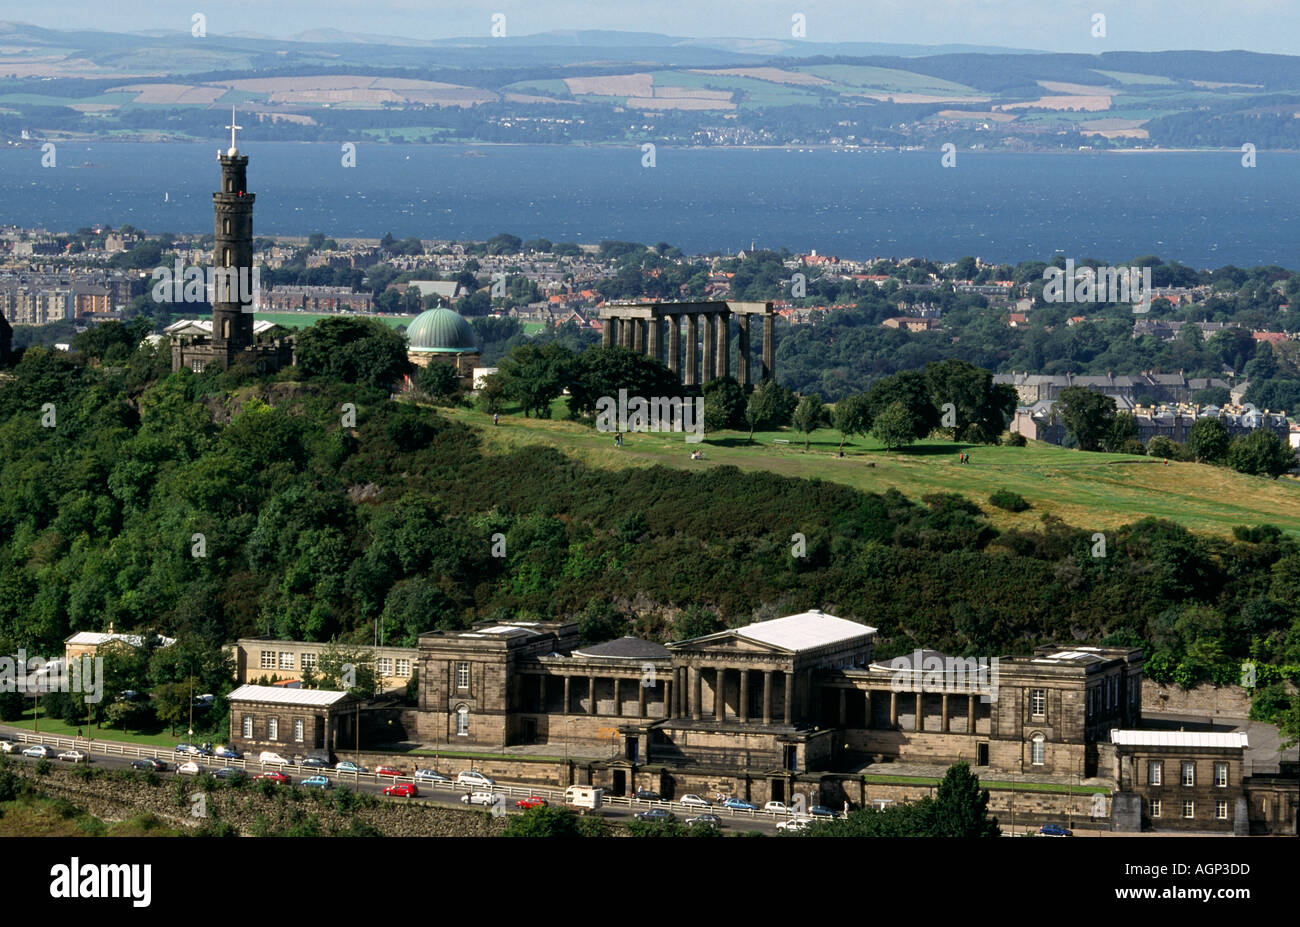 Le Monument Nelson, le Monument National et l'Observatoire sur la Colline Calton vue Arthur's Seat à Holyrood Park, Edinburgh. Banque D'Images